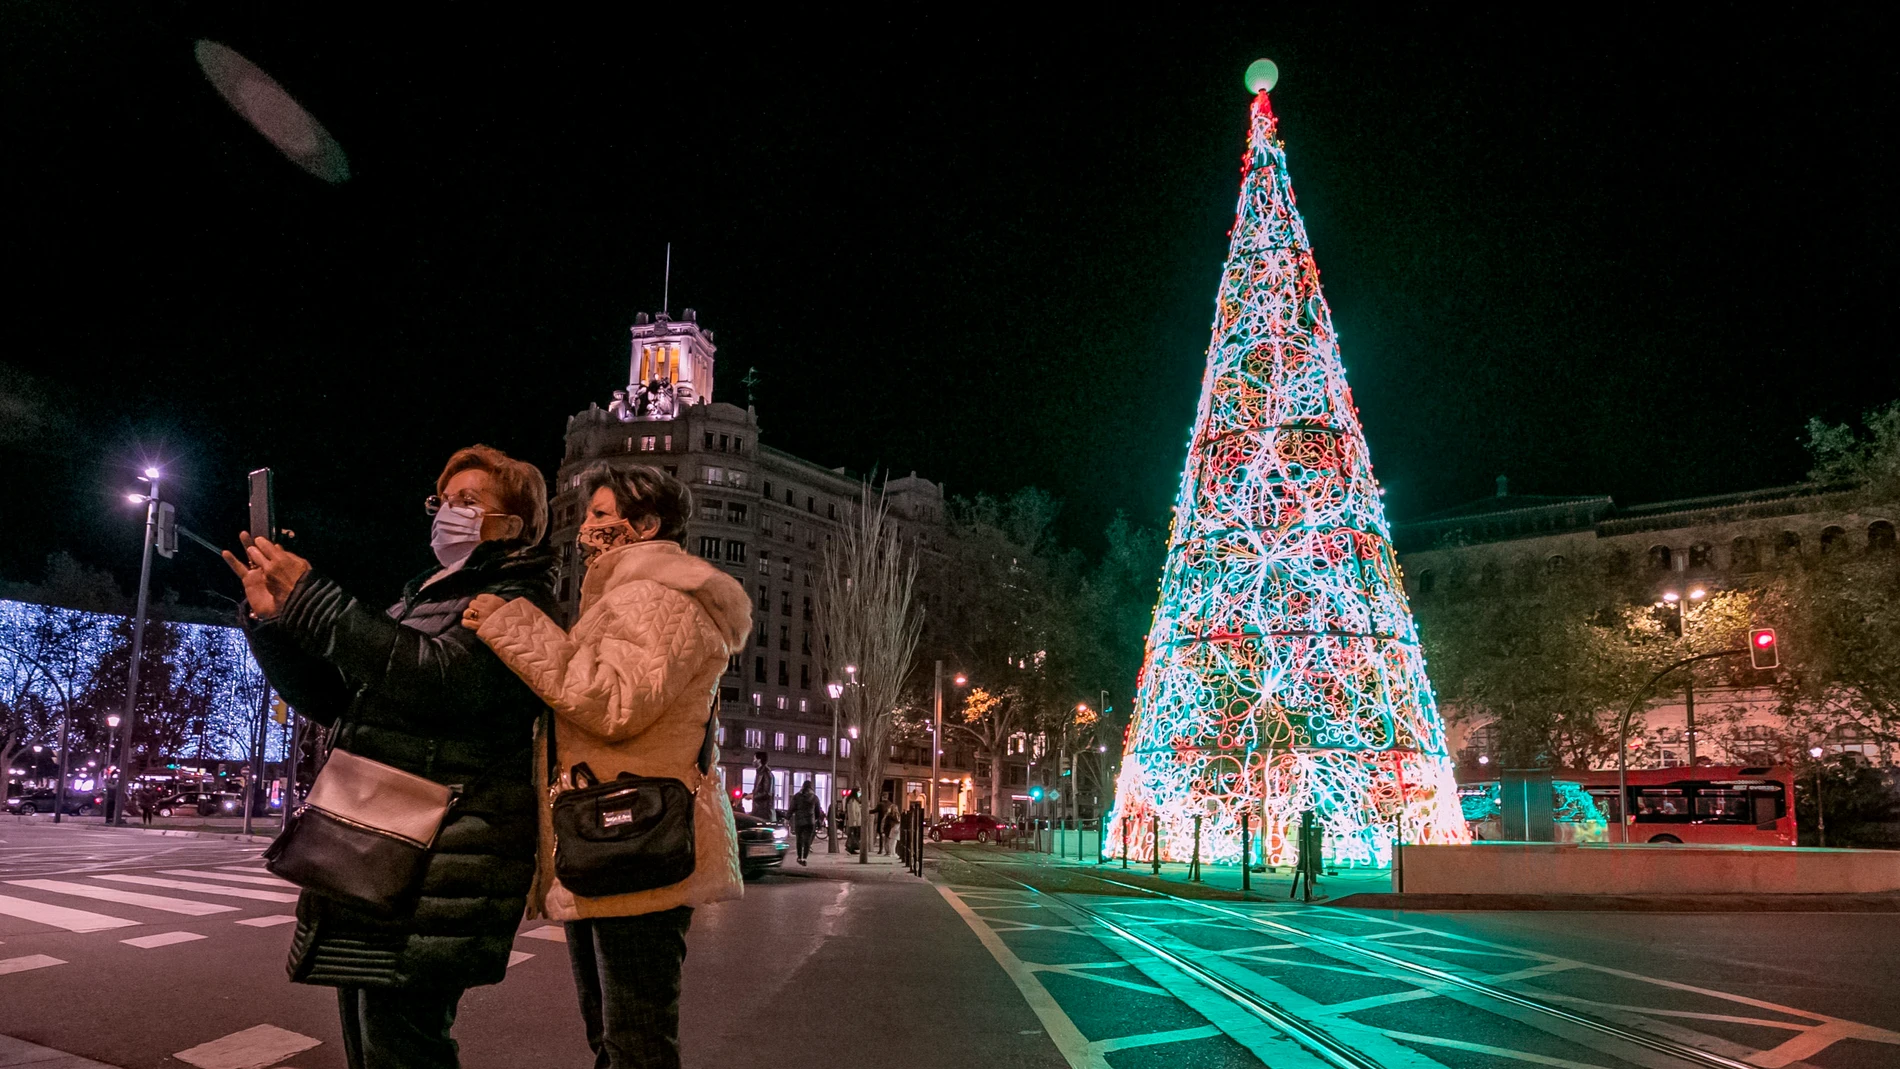 Unas mujeres se fotografían con el árbol de Navidad en la Plaza de Paraíso de Zaragoza